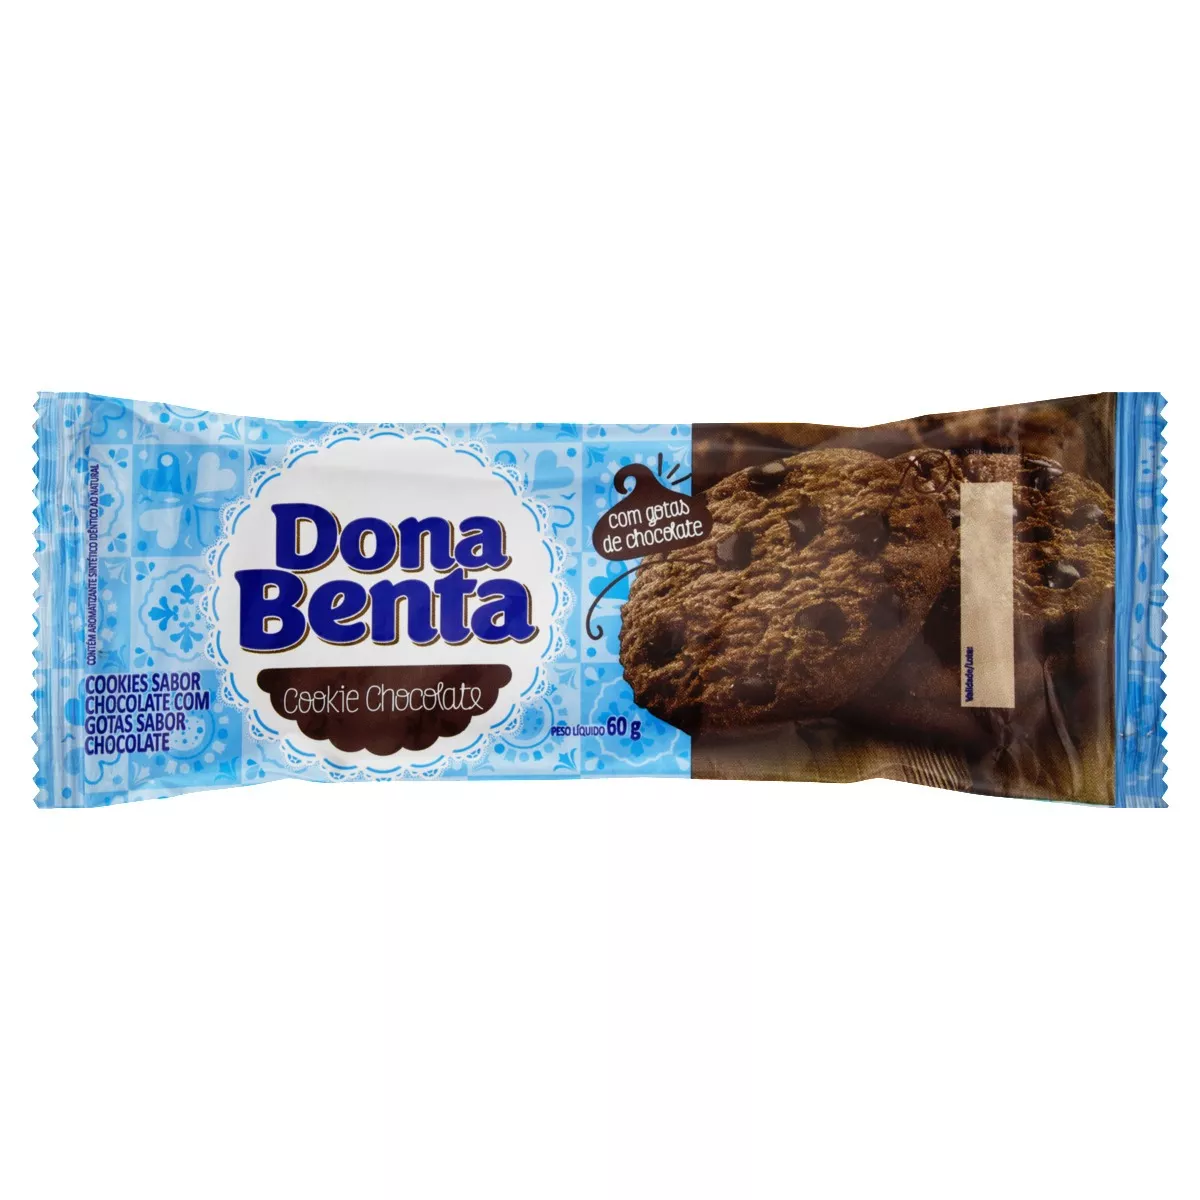 Biscoito Cookie Chocolate Com Gotas De Chocolate Dona Benta Pacote 60g